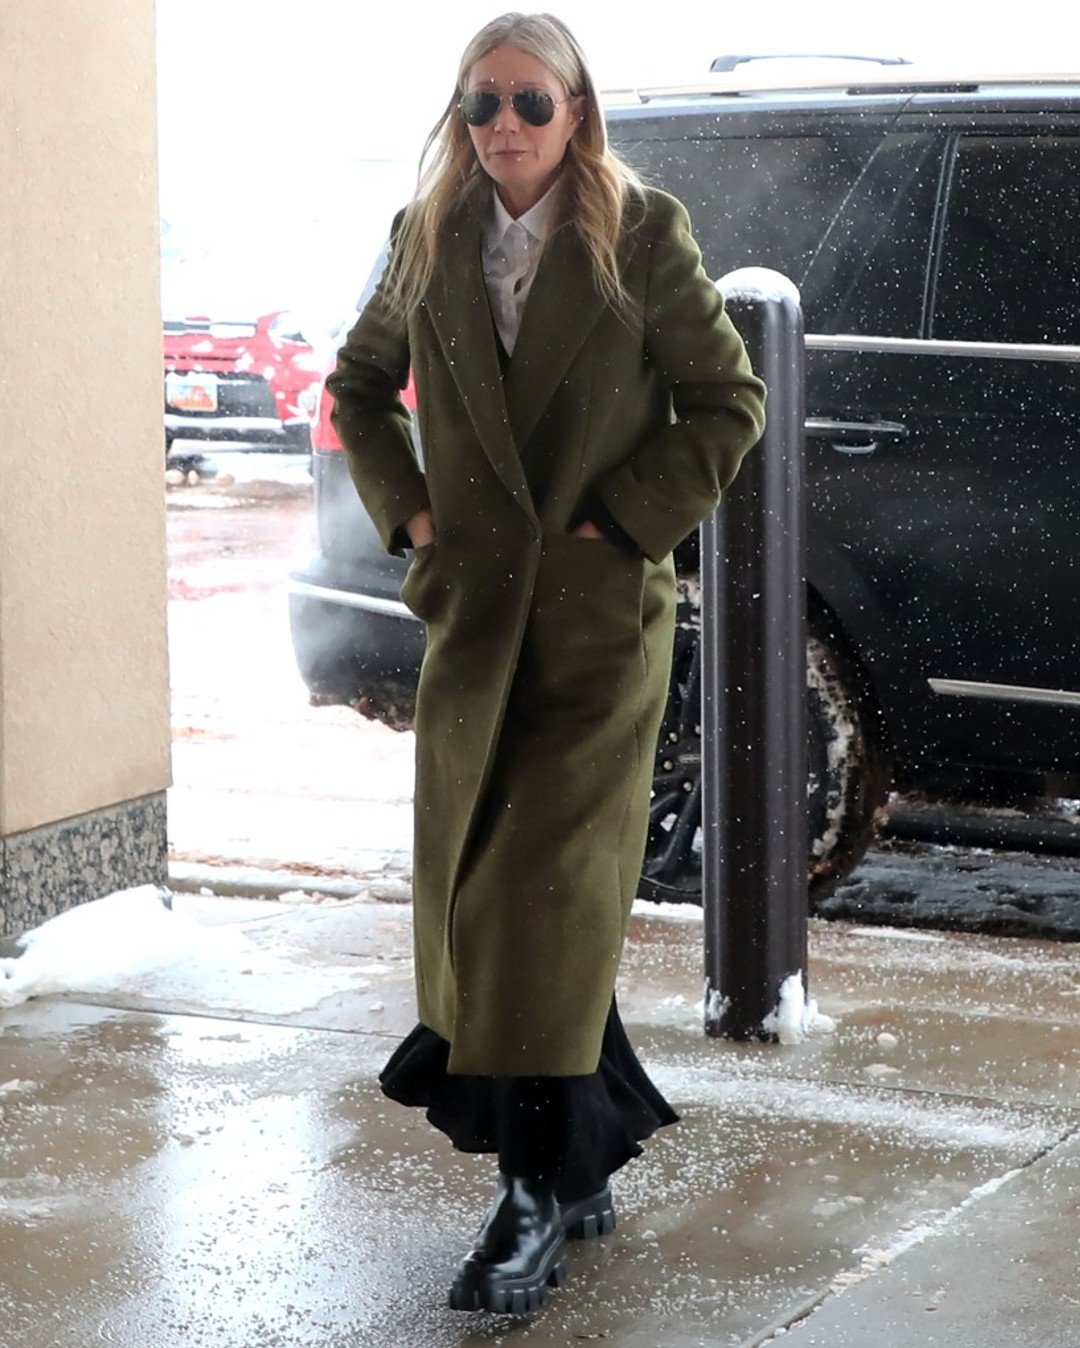 Gwyneth Paltrow - julgamento - luxo sem ostentação - inverno - julgamento - https://stealthelook.com.br